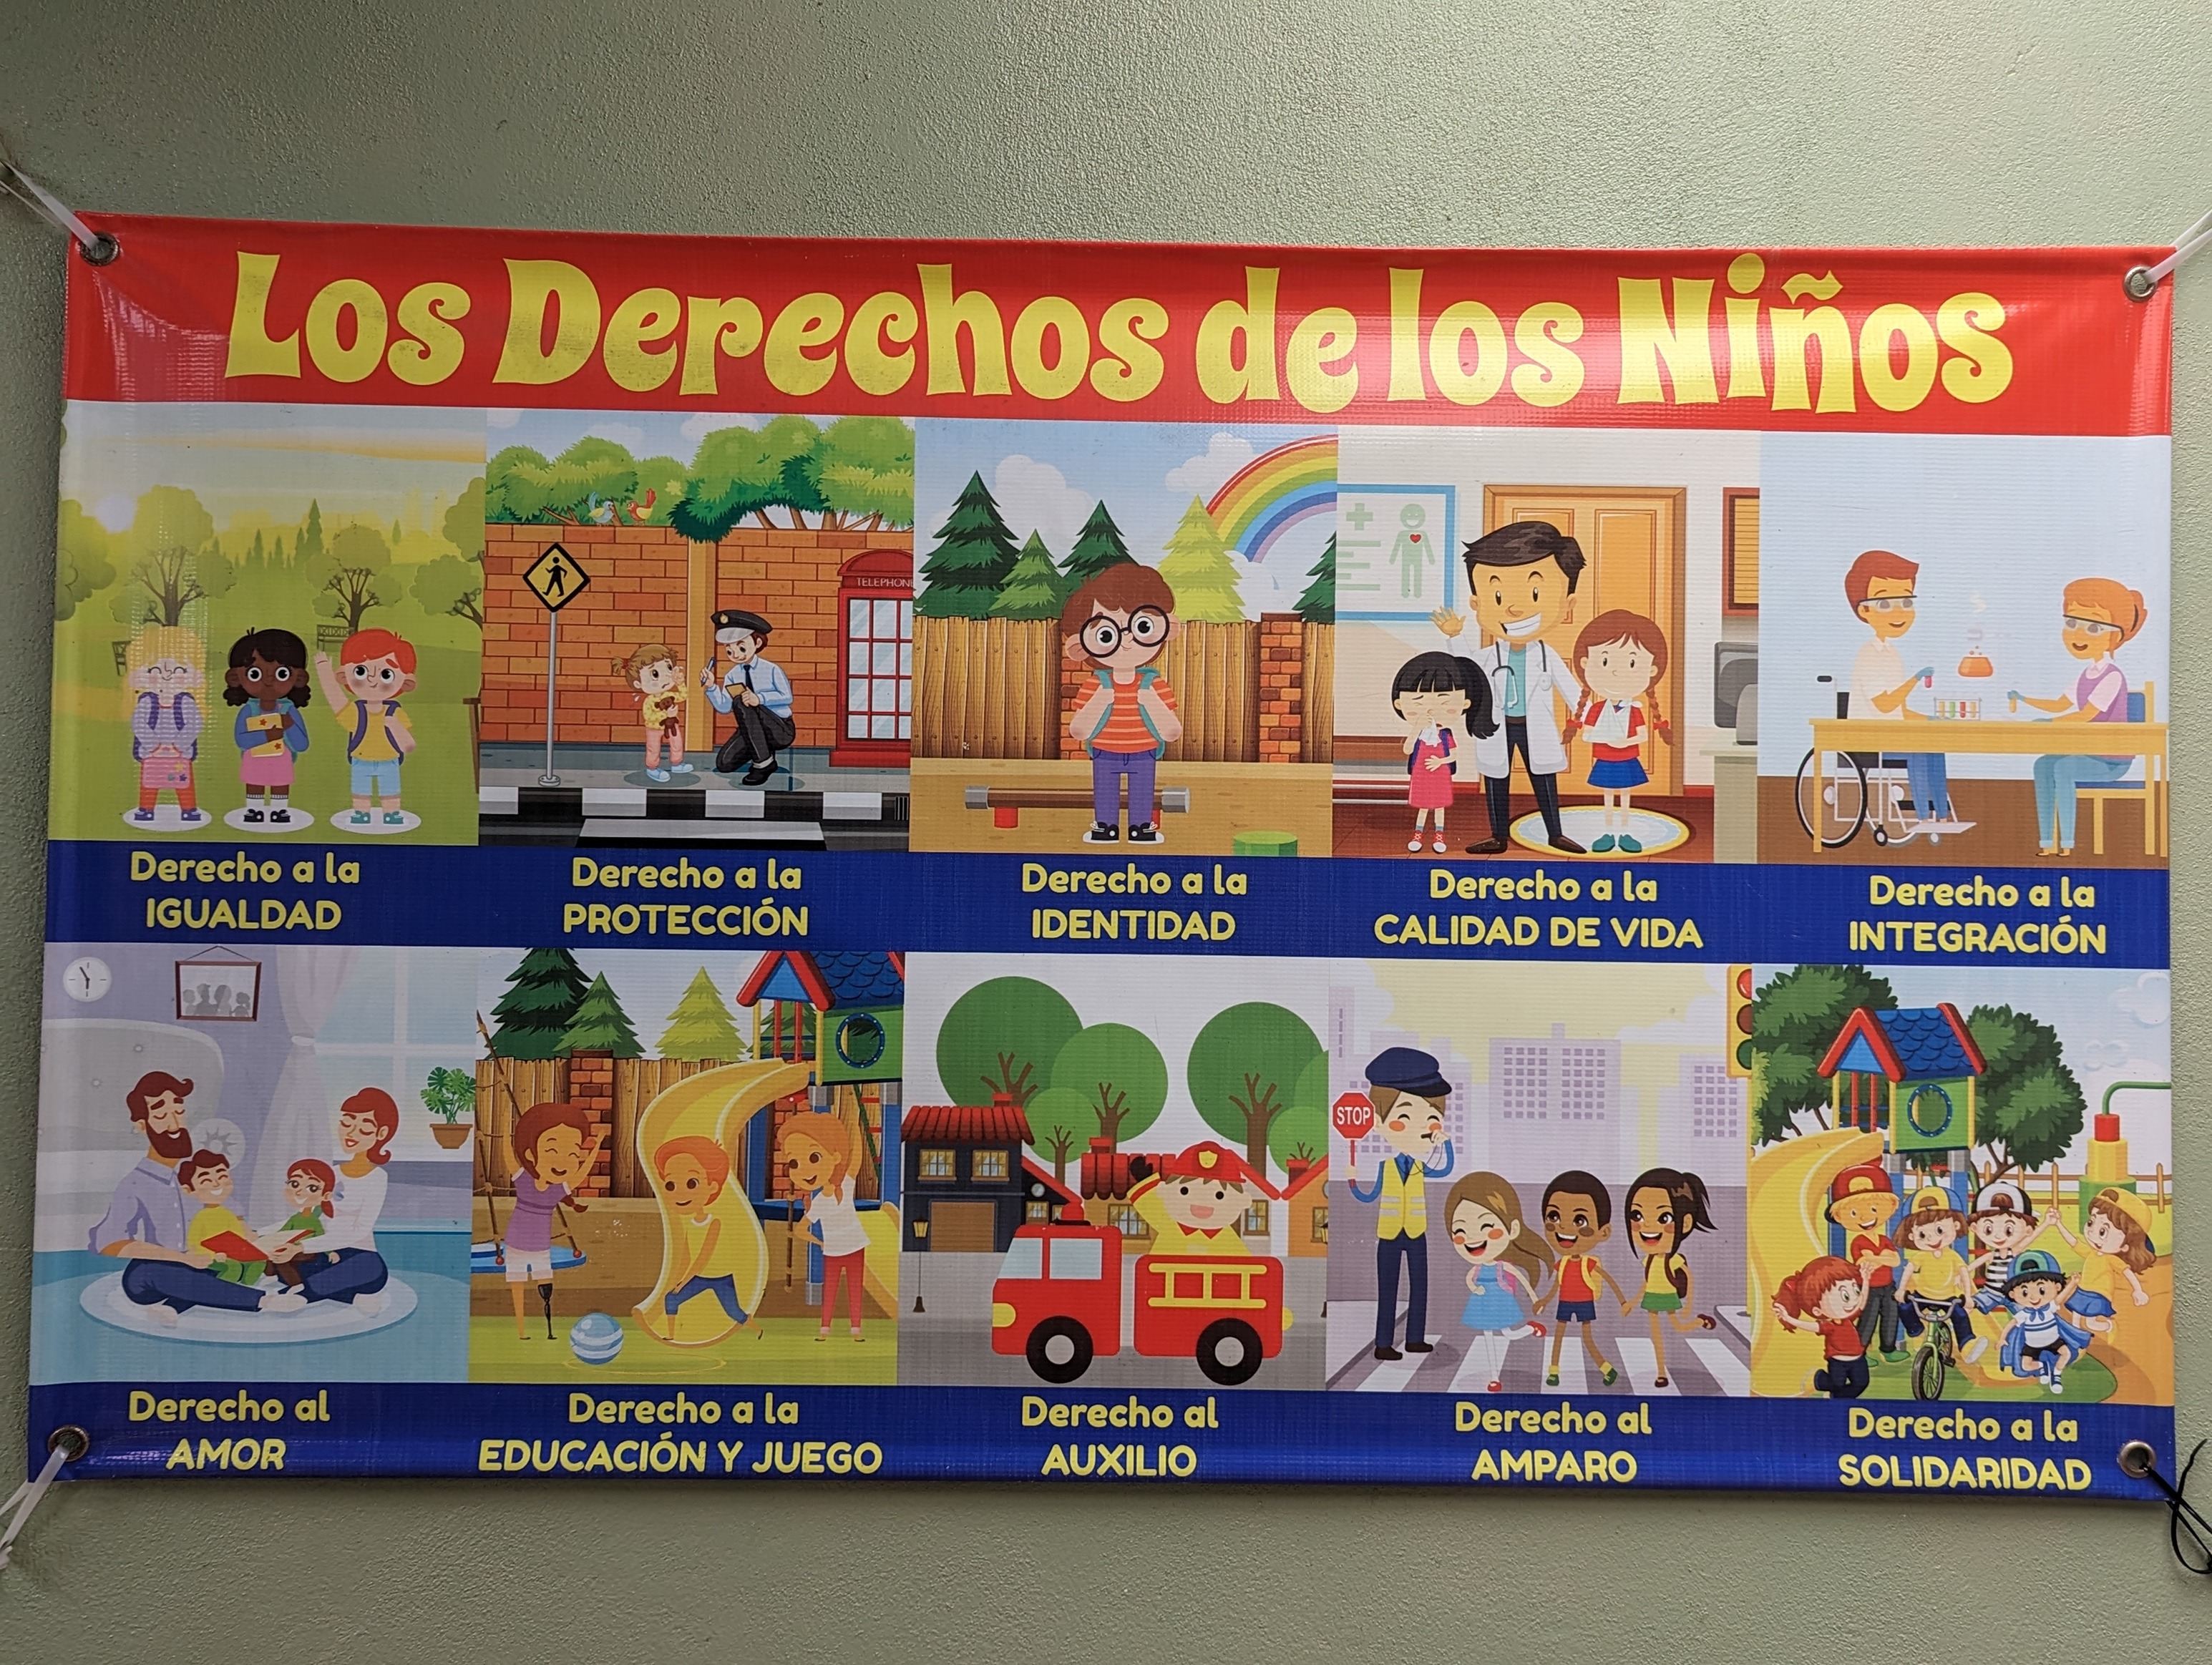 Banner showing Los Derechos de los Niños